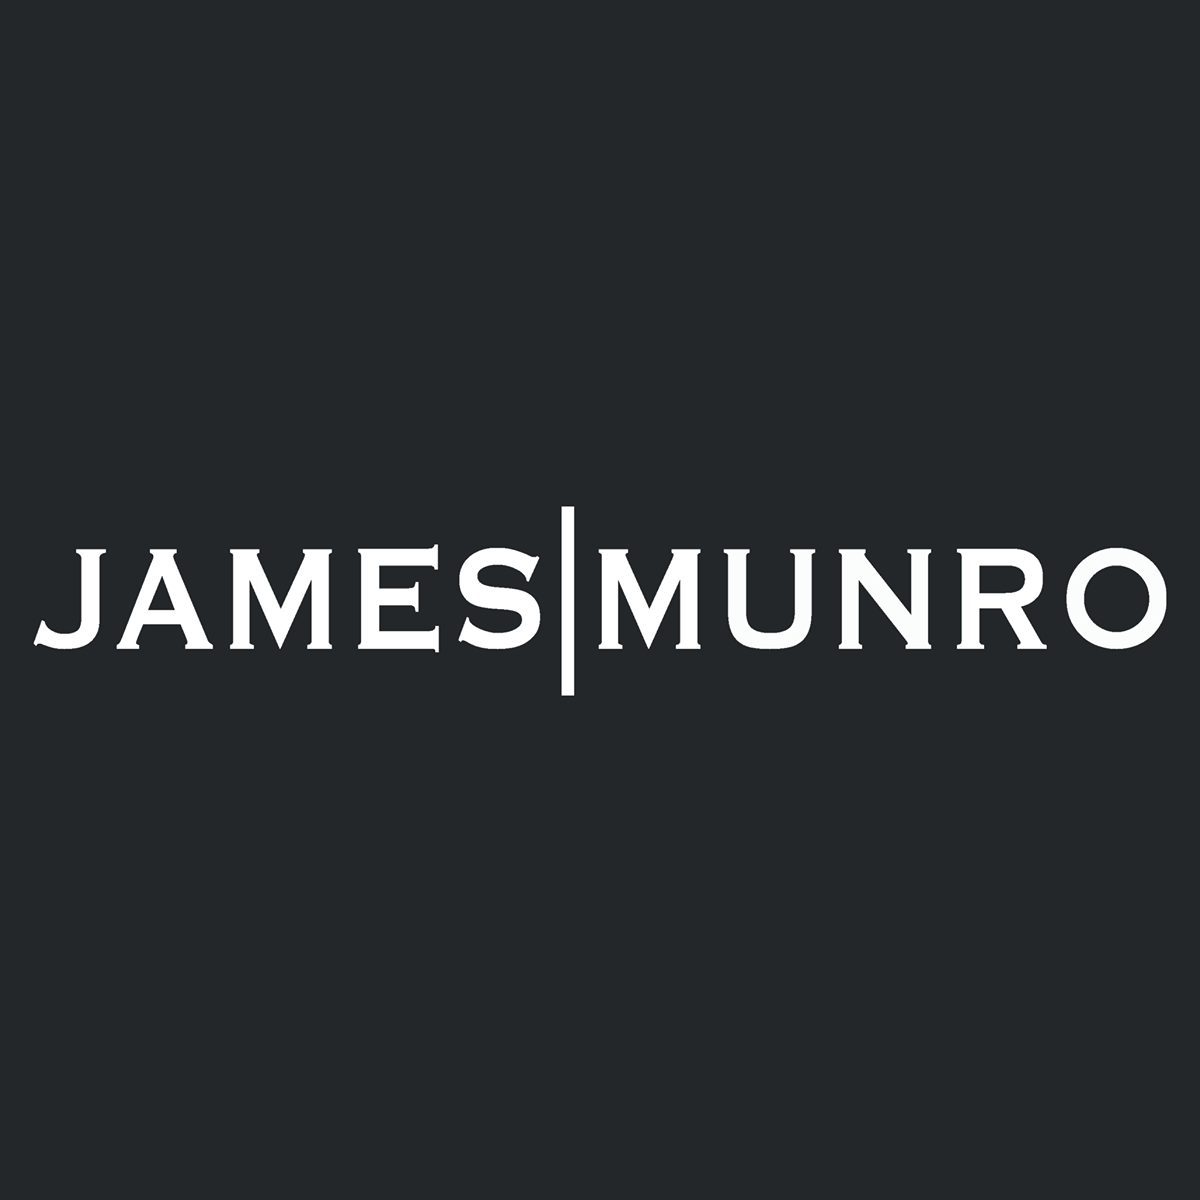 James Munro logo